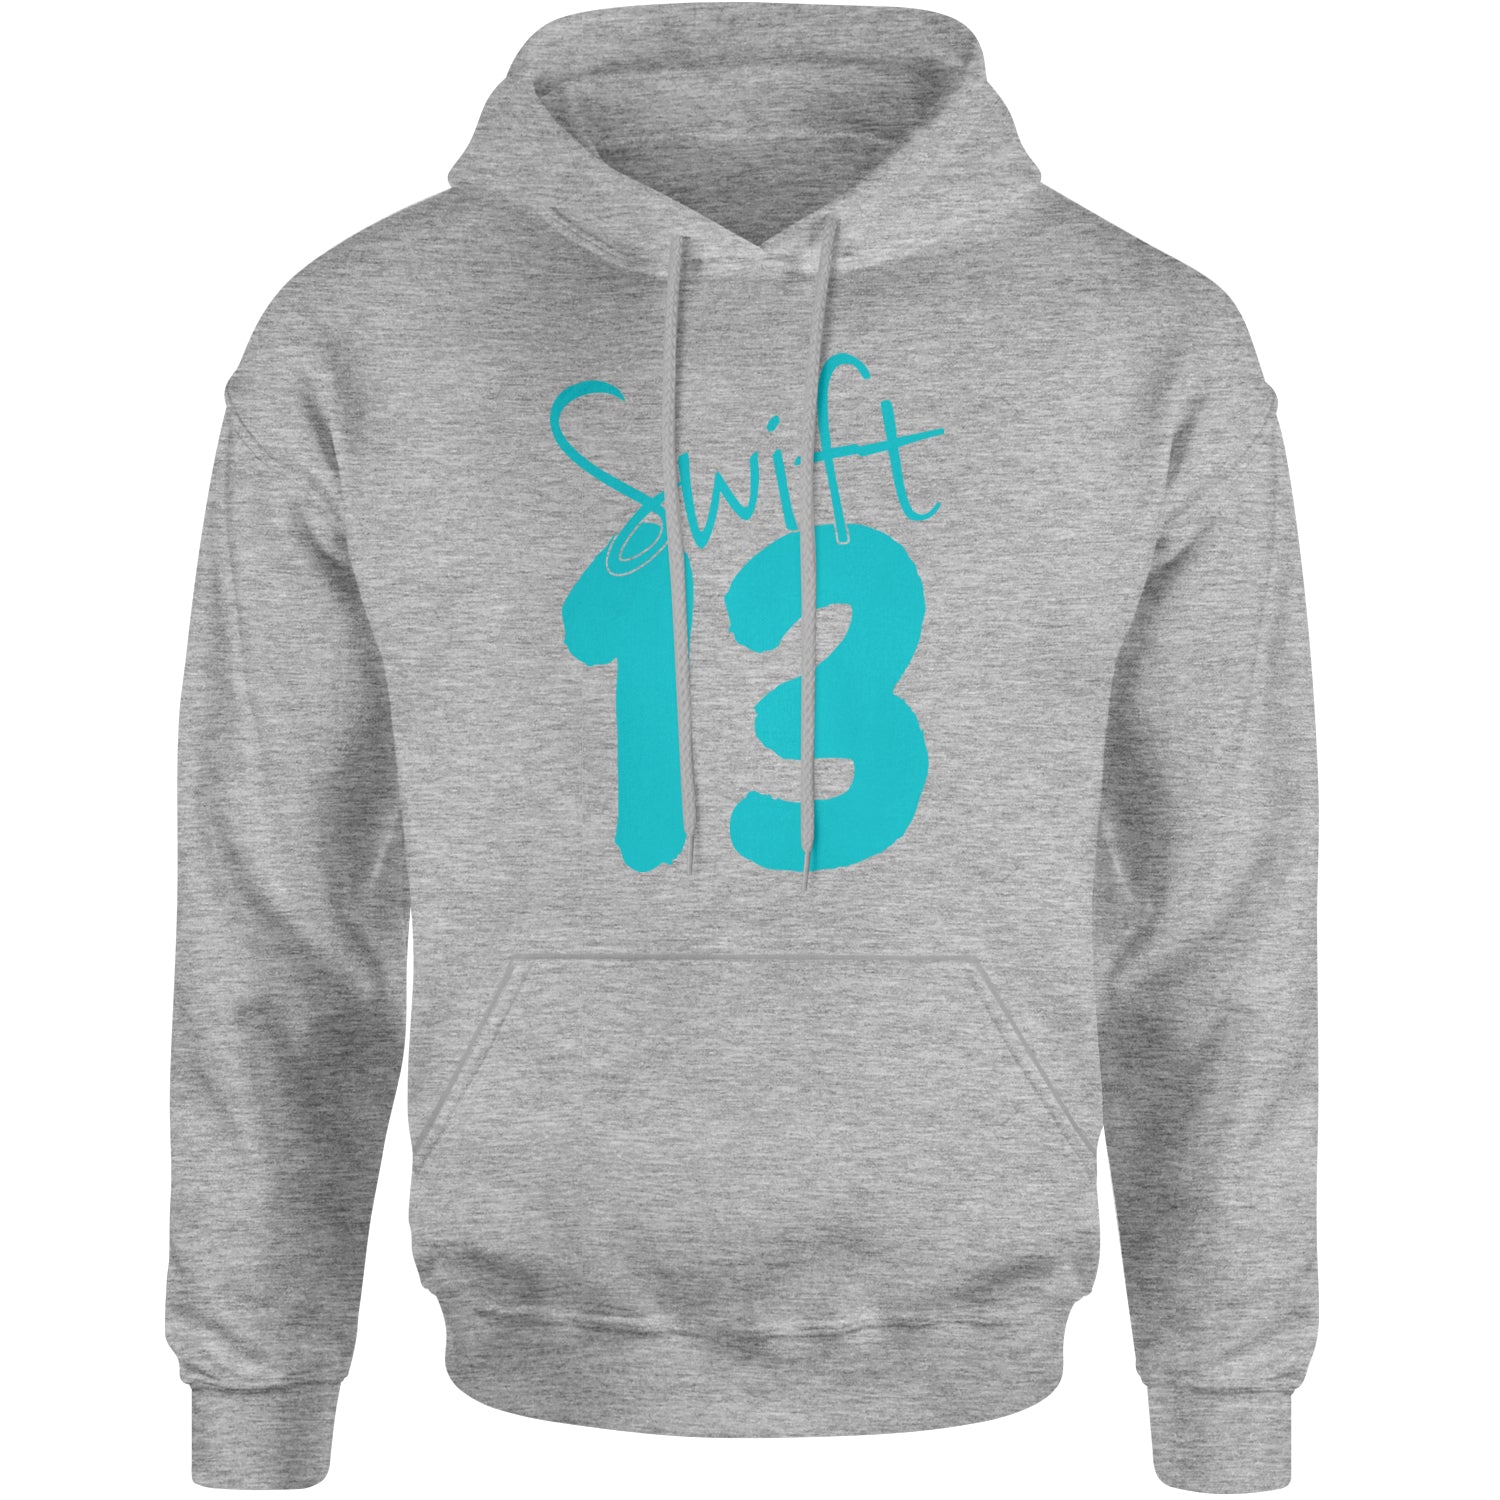 13 Swift 13 Lucky Number Era TTPD Adult Hoodie Sweatshirt Heather Grey